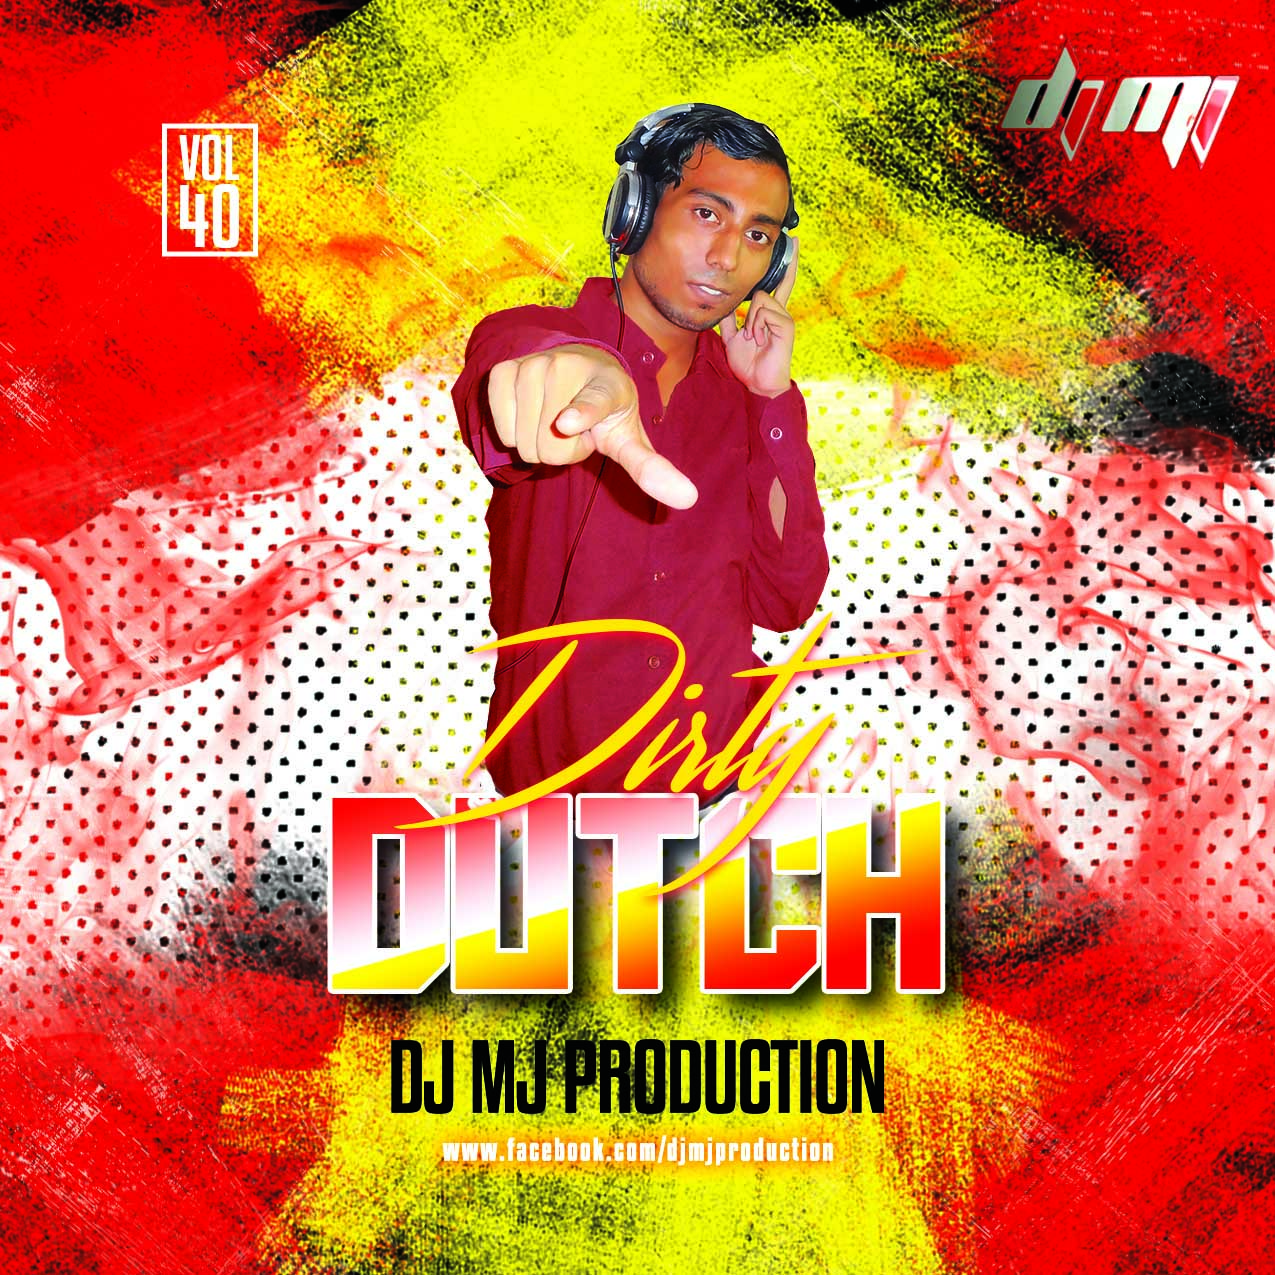 Dirty Dutch Vol. 40